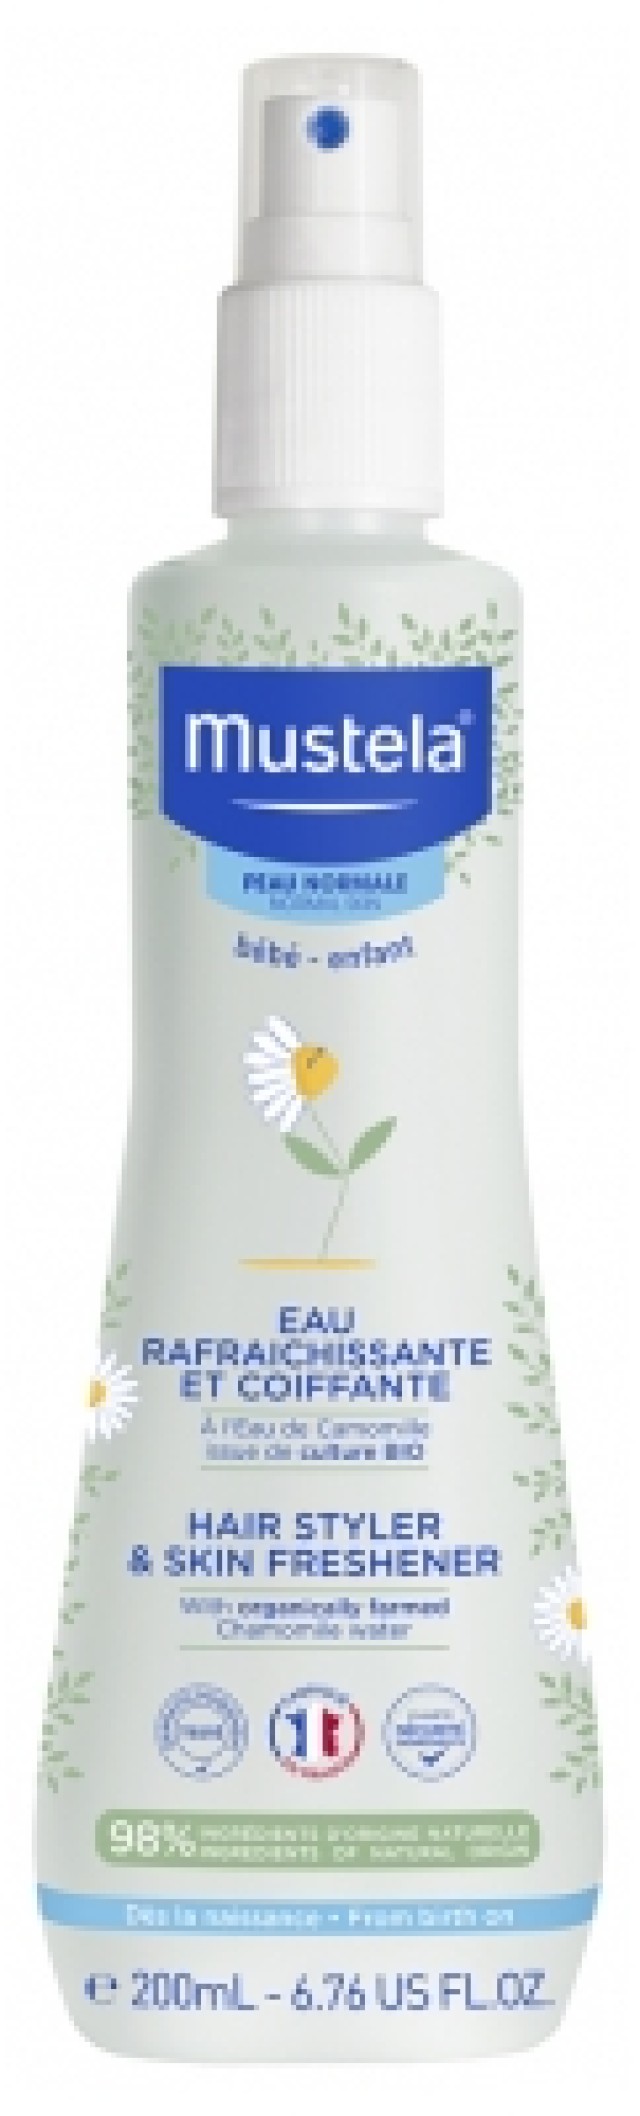 Mustela Hair Styler & Skin Freshener Νερό Φρεσκαρίσματος για Σώμα και Μαλλιά με Χαμομήλι 200ml